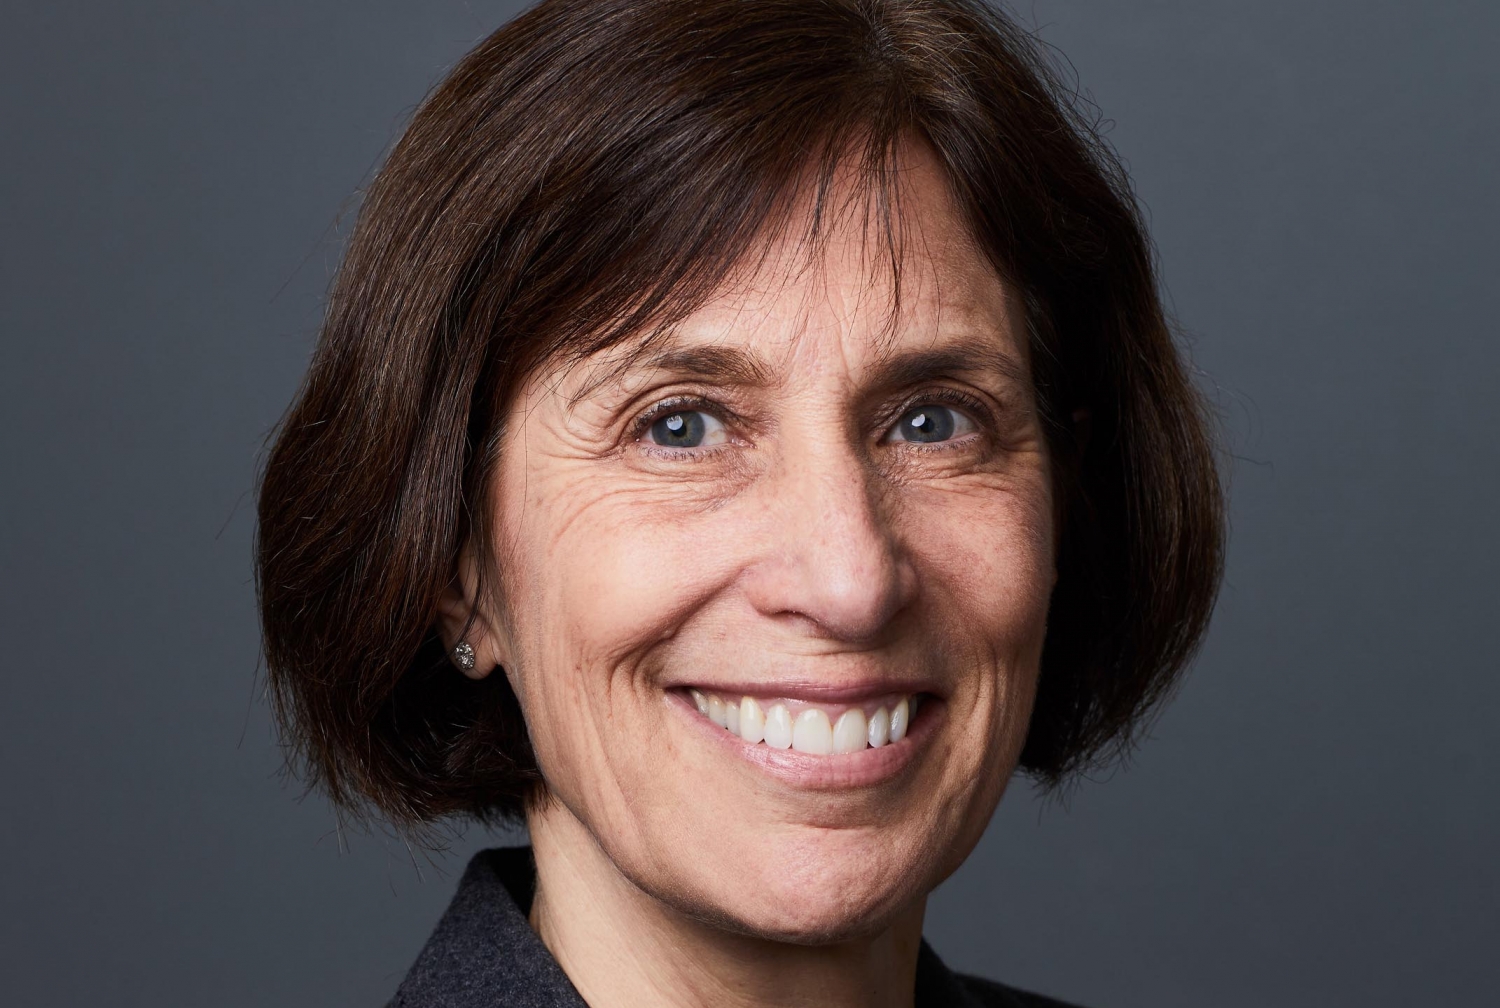 Dr. Linda Gerber